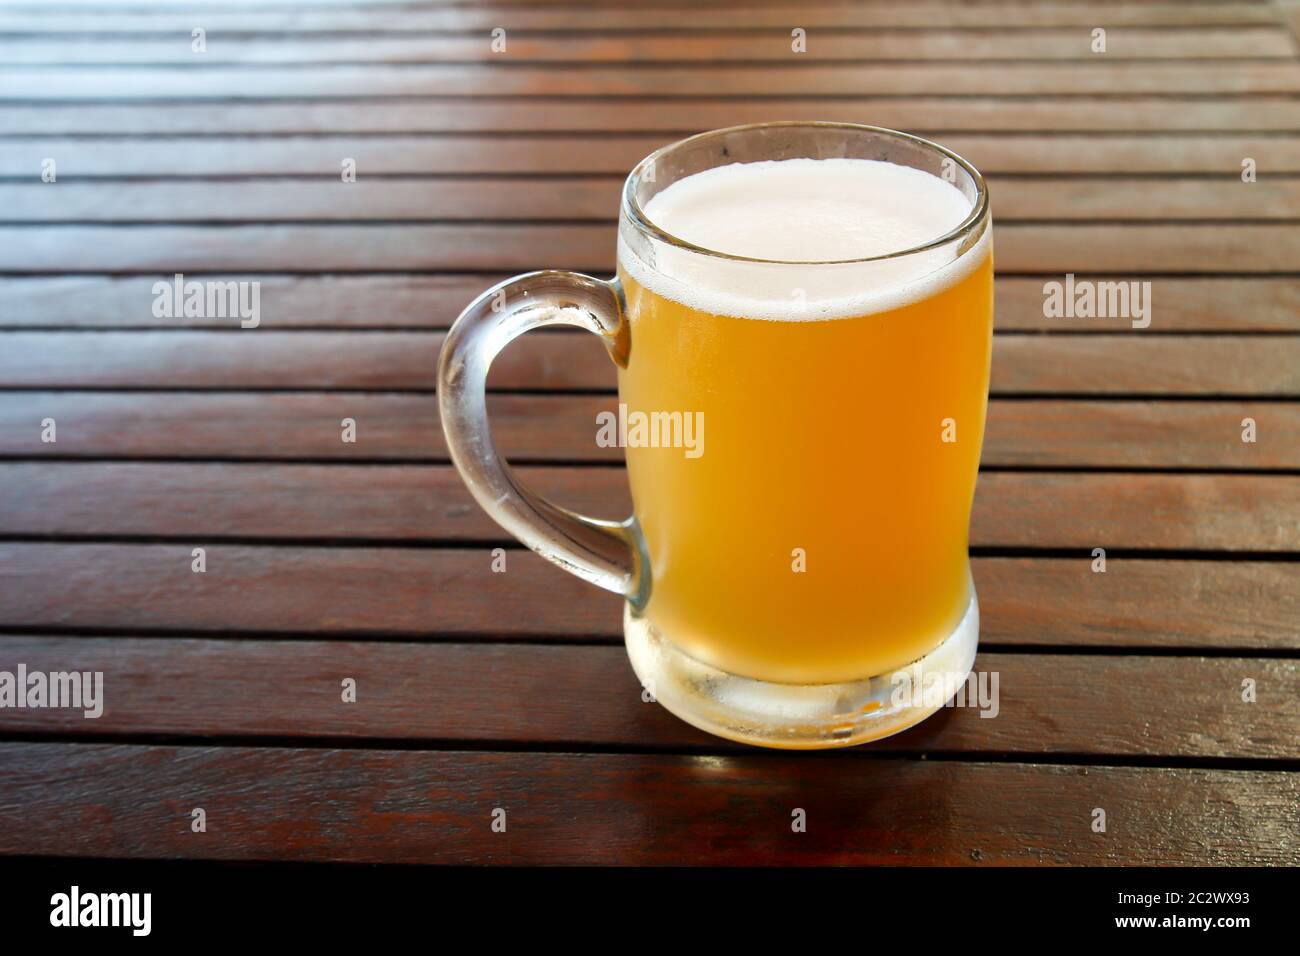 un verre rempli de bière sur une table Banque D'Images